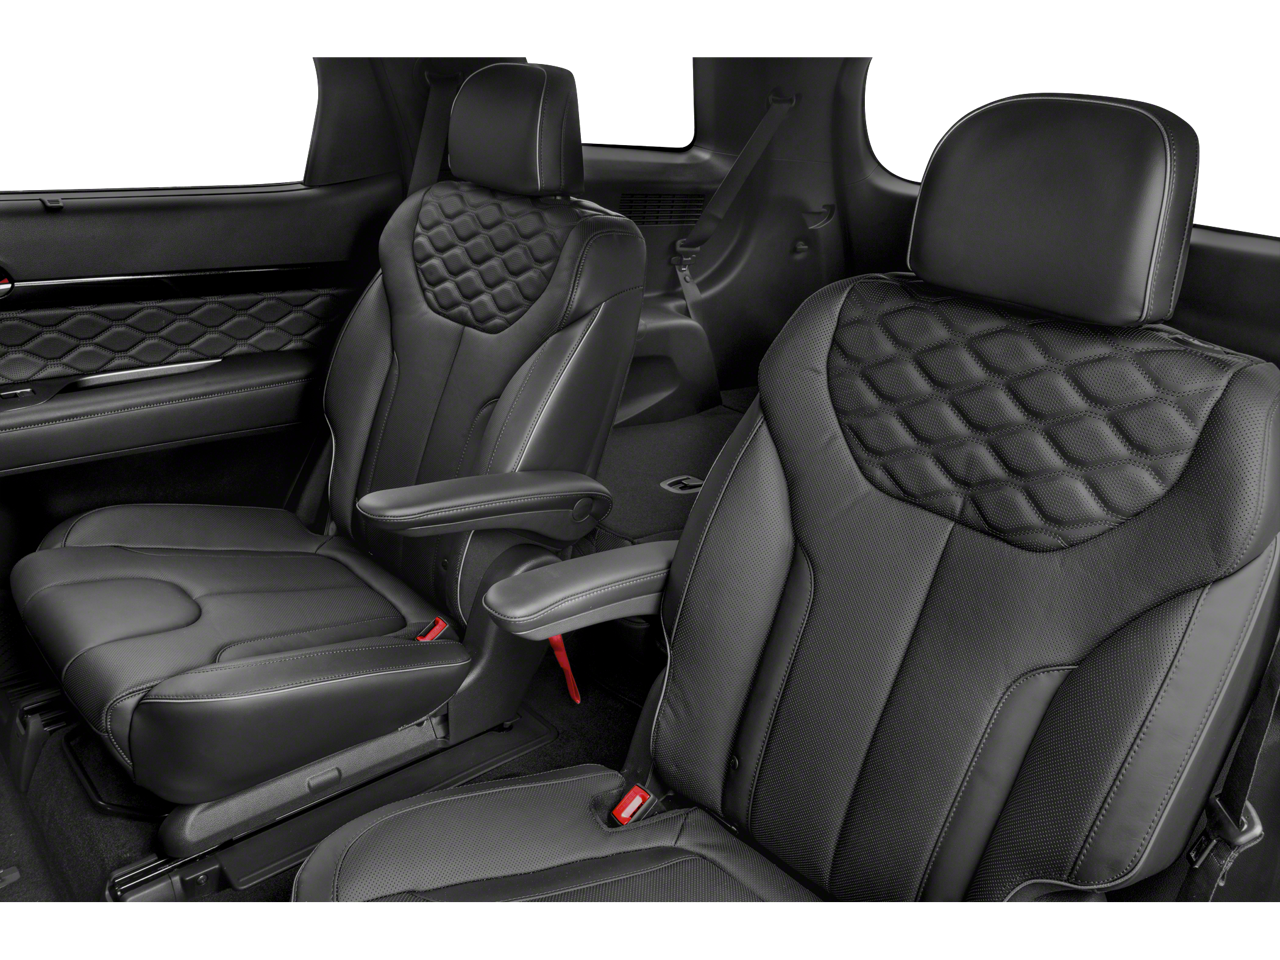 2020 Hyundai Palisade Limited AWD/10.25" NAVIGATION/LETAHER SEATS/THIR ROW SEATS